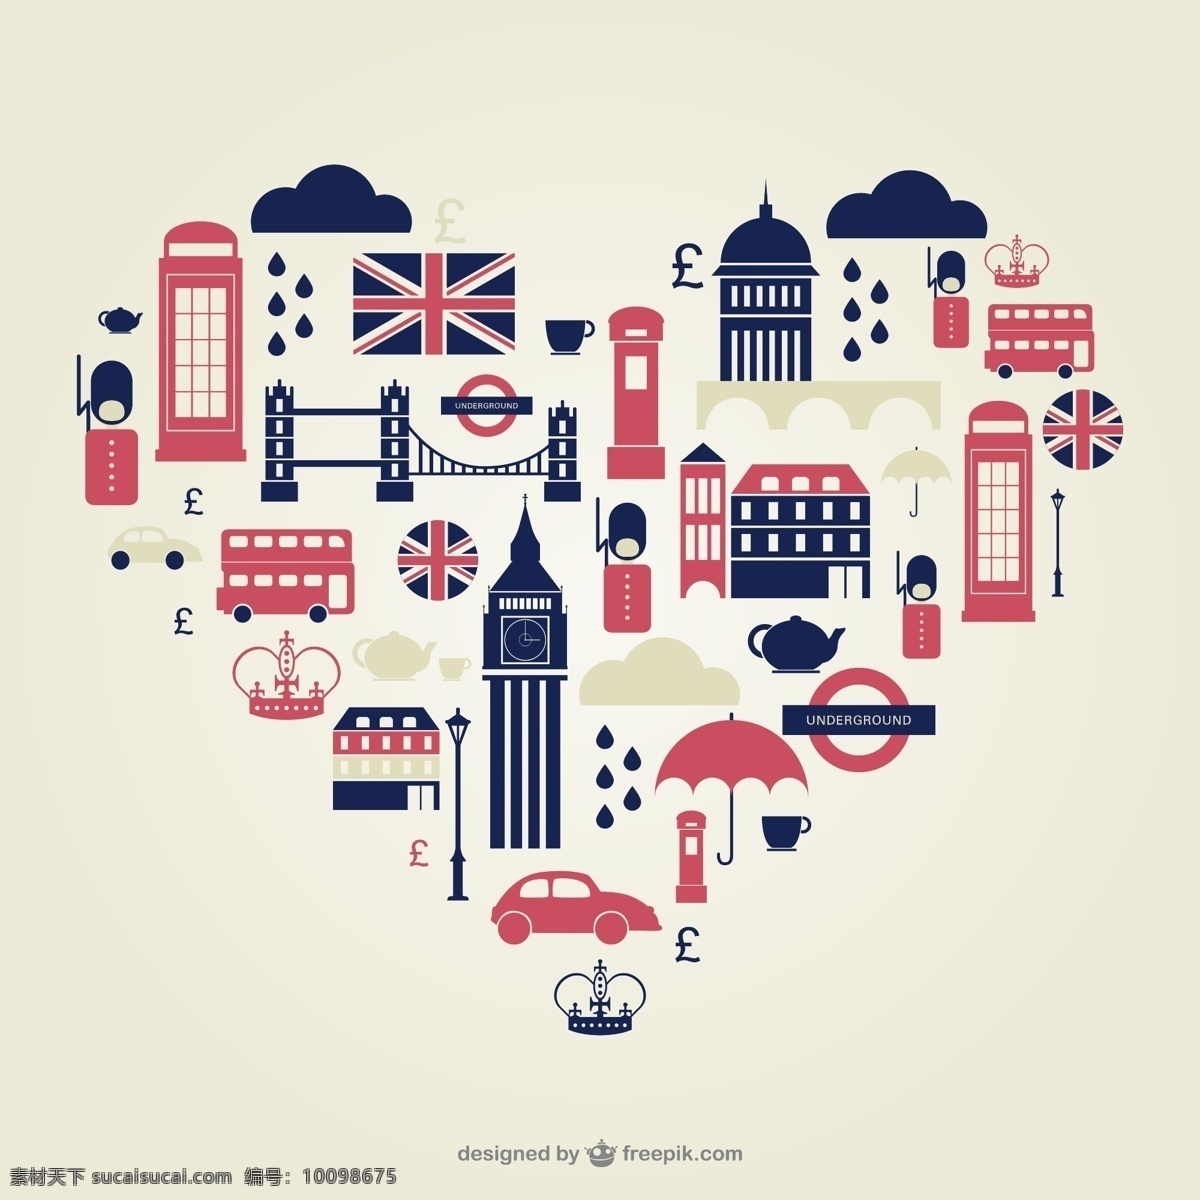 心 型 英国 伦敦 旅游 元素 背景 大本钟 双层巴士 电话亭 英国国旗 图标 心形 矢量图 ai格式